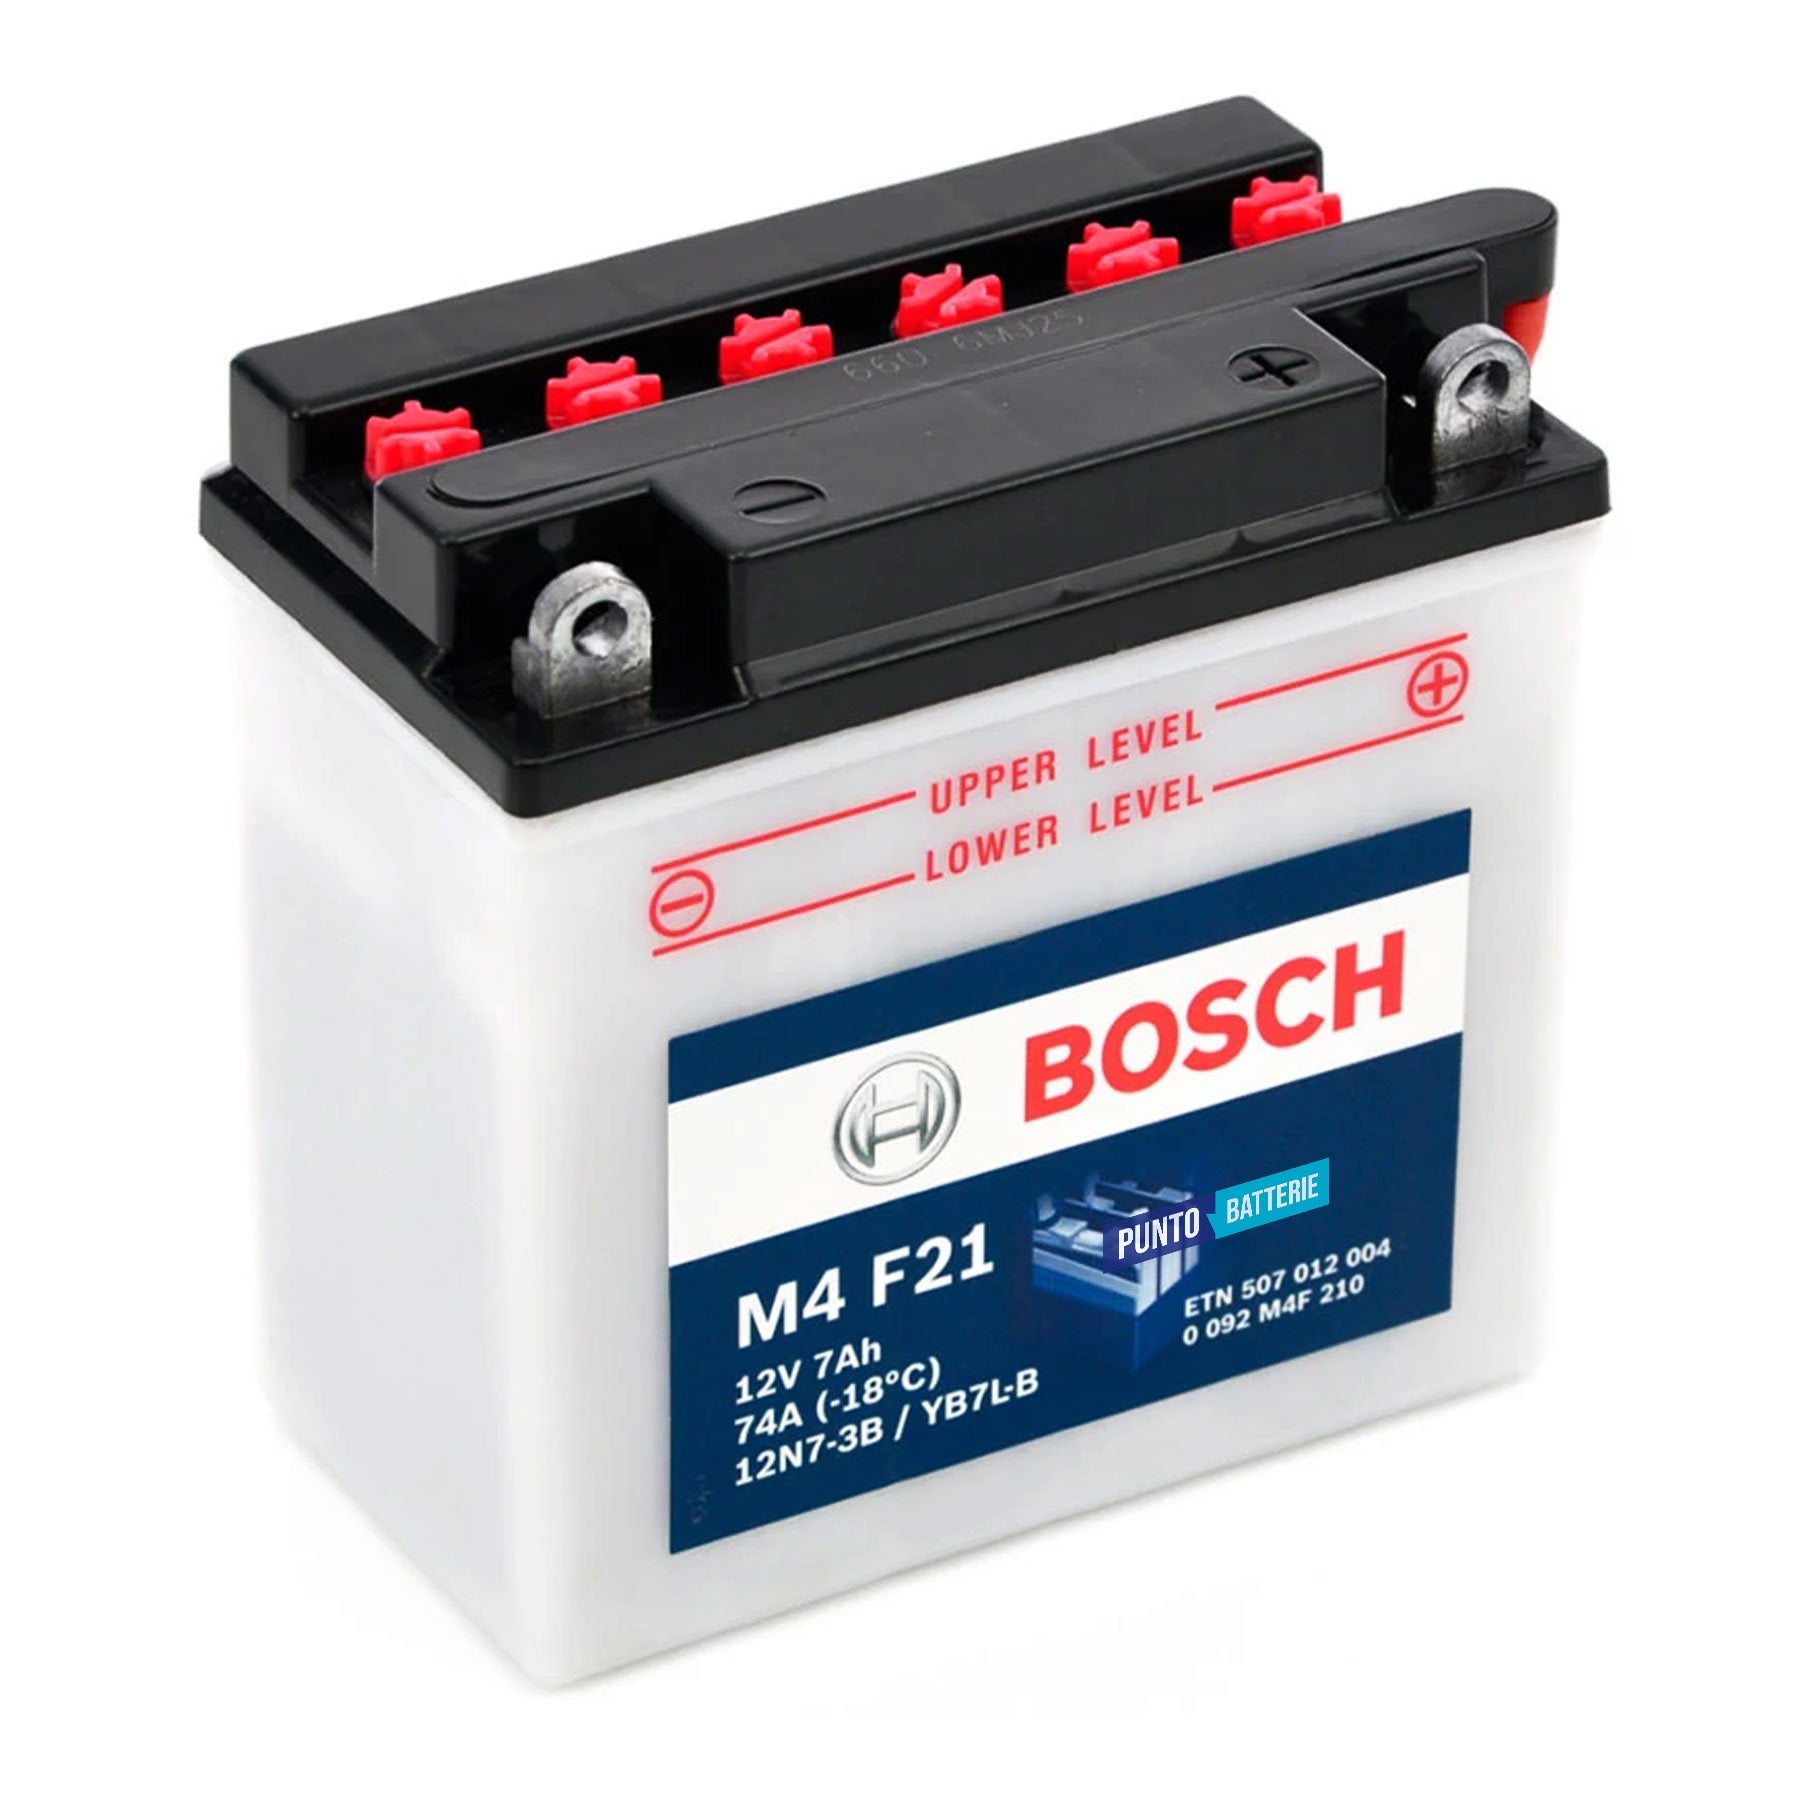 Batteria originale Bosch M4 M4F21, dimensioni 99 x 57 x 111, polo positivo a destra, 12 volt, 7 amperora, 74 ampere. Batteria per moto, scooter e powersport.